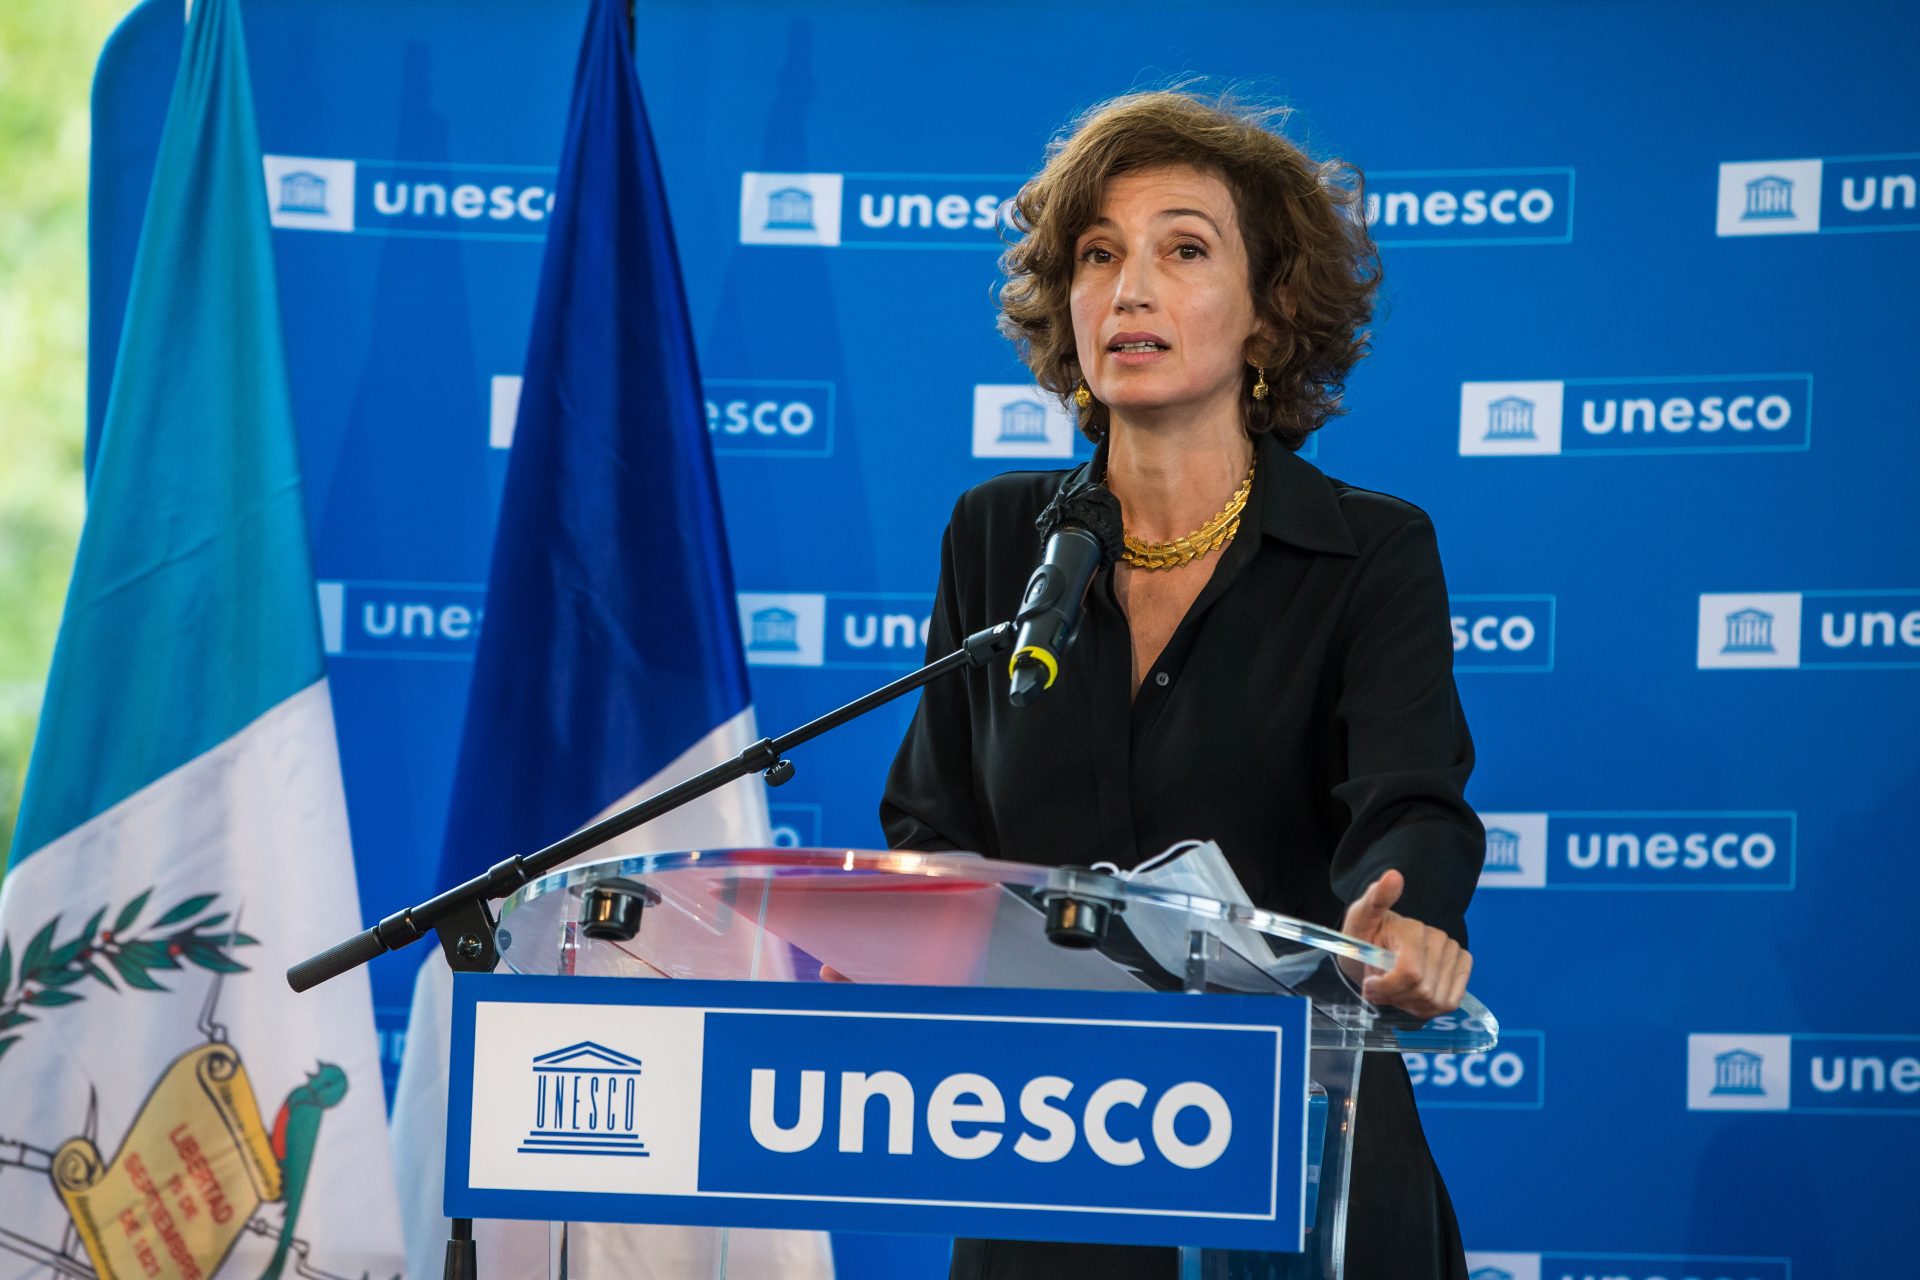 La directora general de la Unesco, Audrey Azoulay, en una fotografía de archivo. EFE/Christophe Petit Tesson